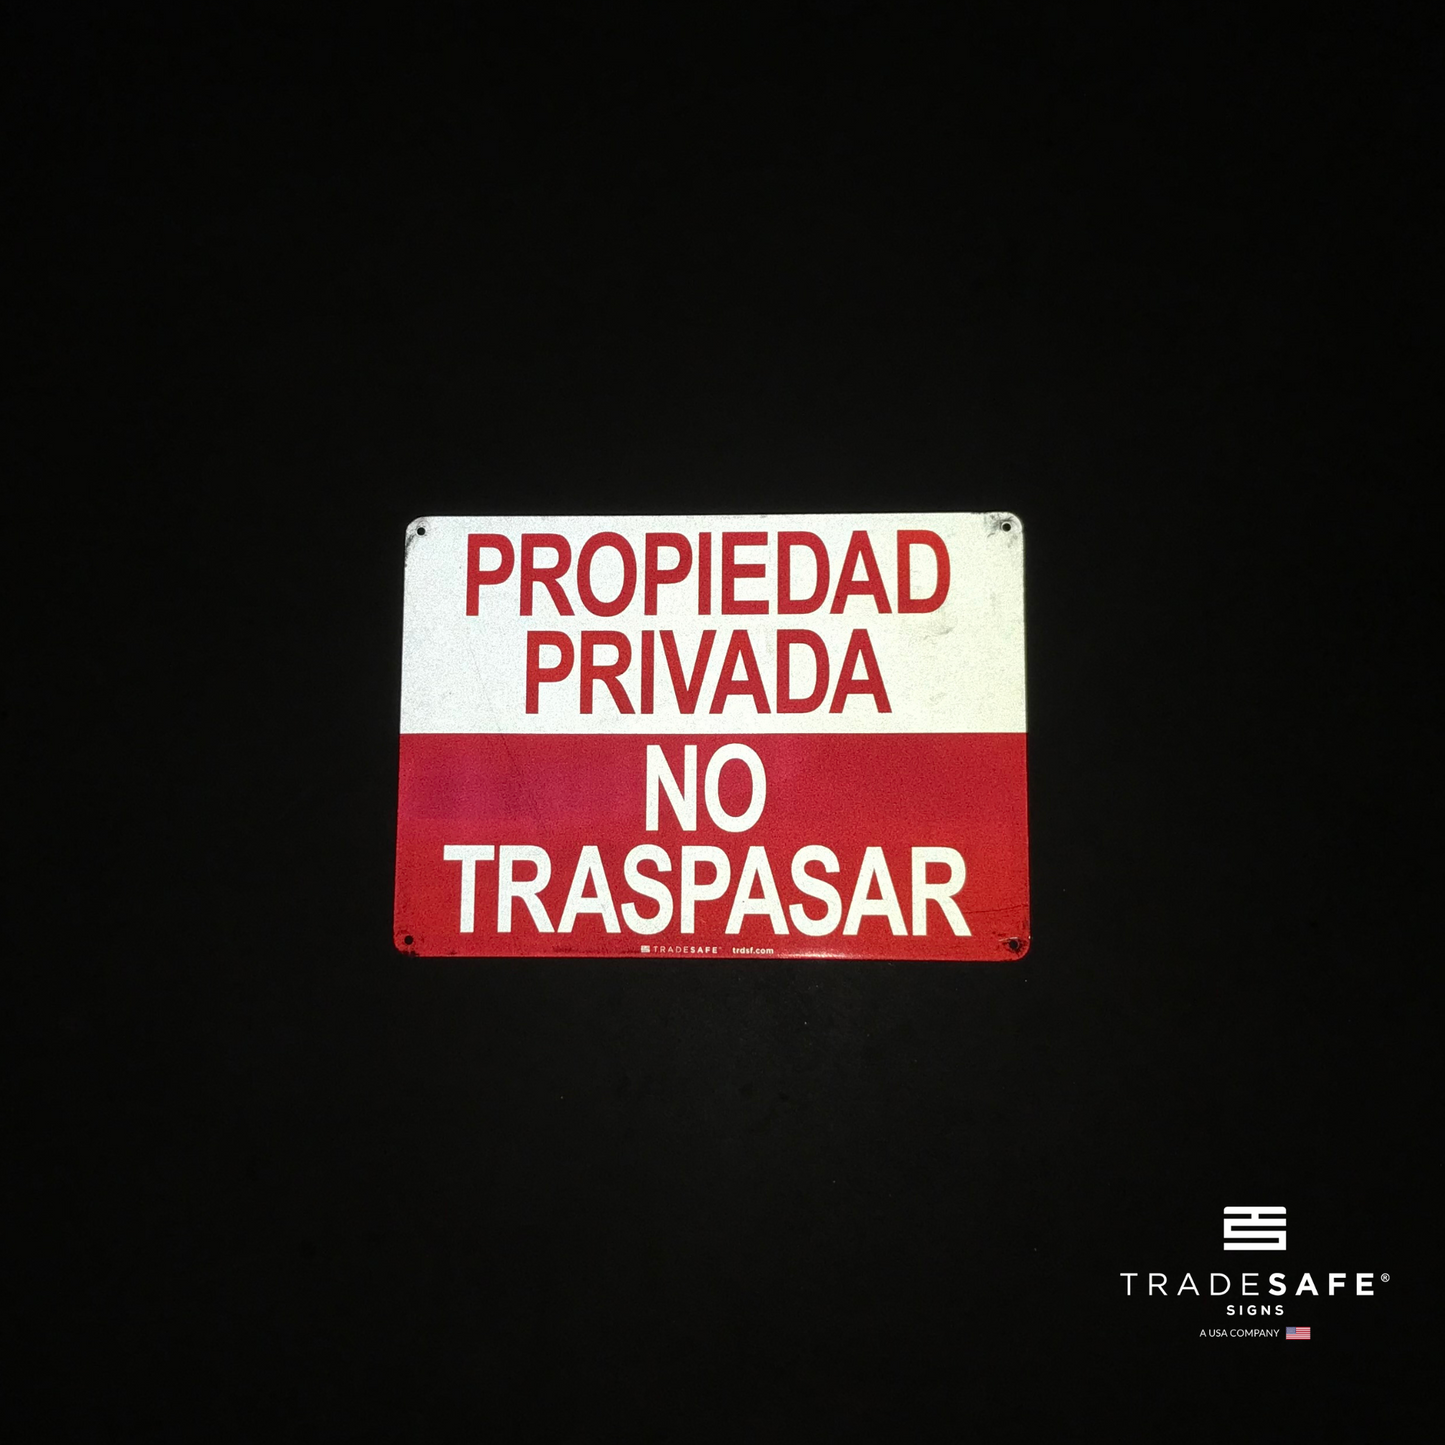 reflective attribute of propiedad privada no traspasar sign on black background